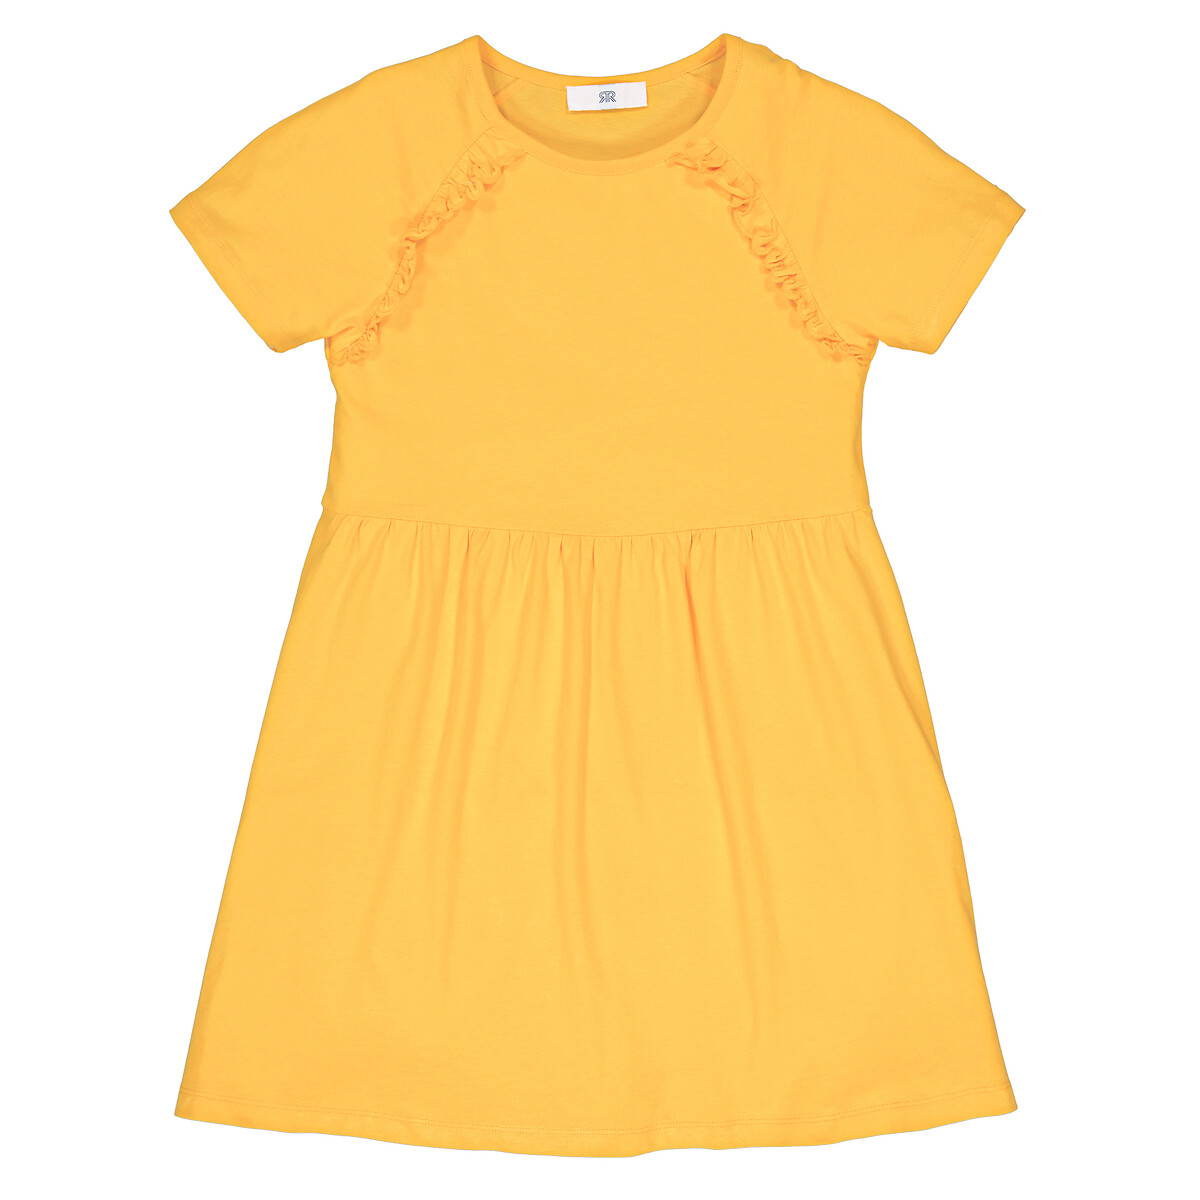 Платье С короткими рукавами и с отделкой оборками 12 лет -150 см желтый LaRedoute, размер 12 лет -150 см - фото 3